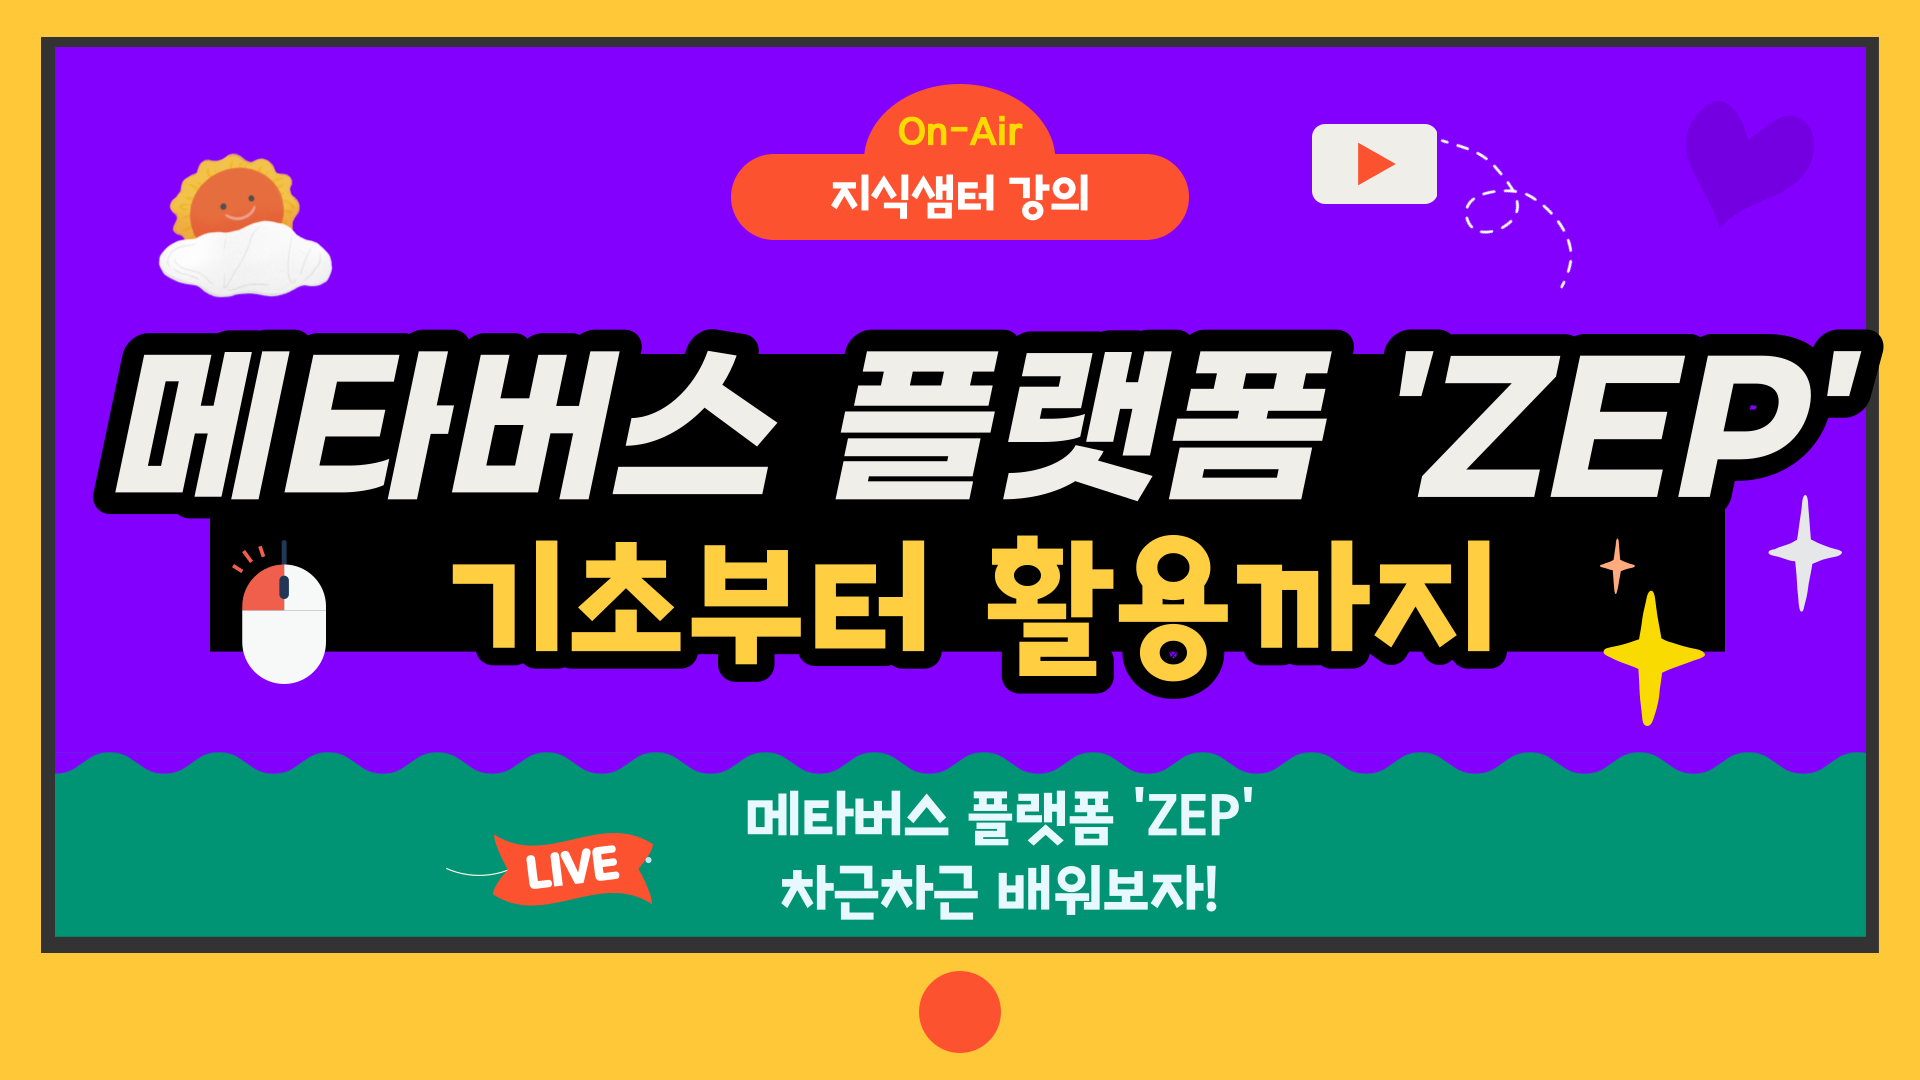 메타버스 플랫폼 'ZEP' 기초부터 활용까지 1기